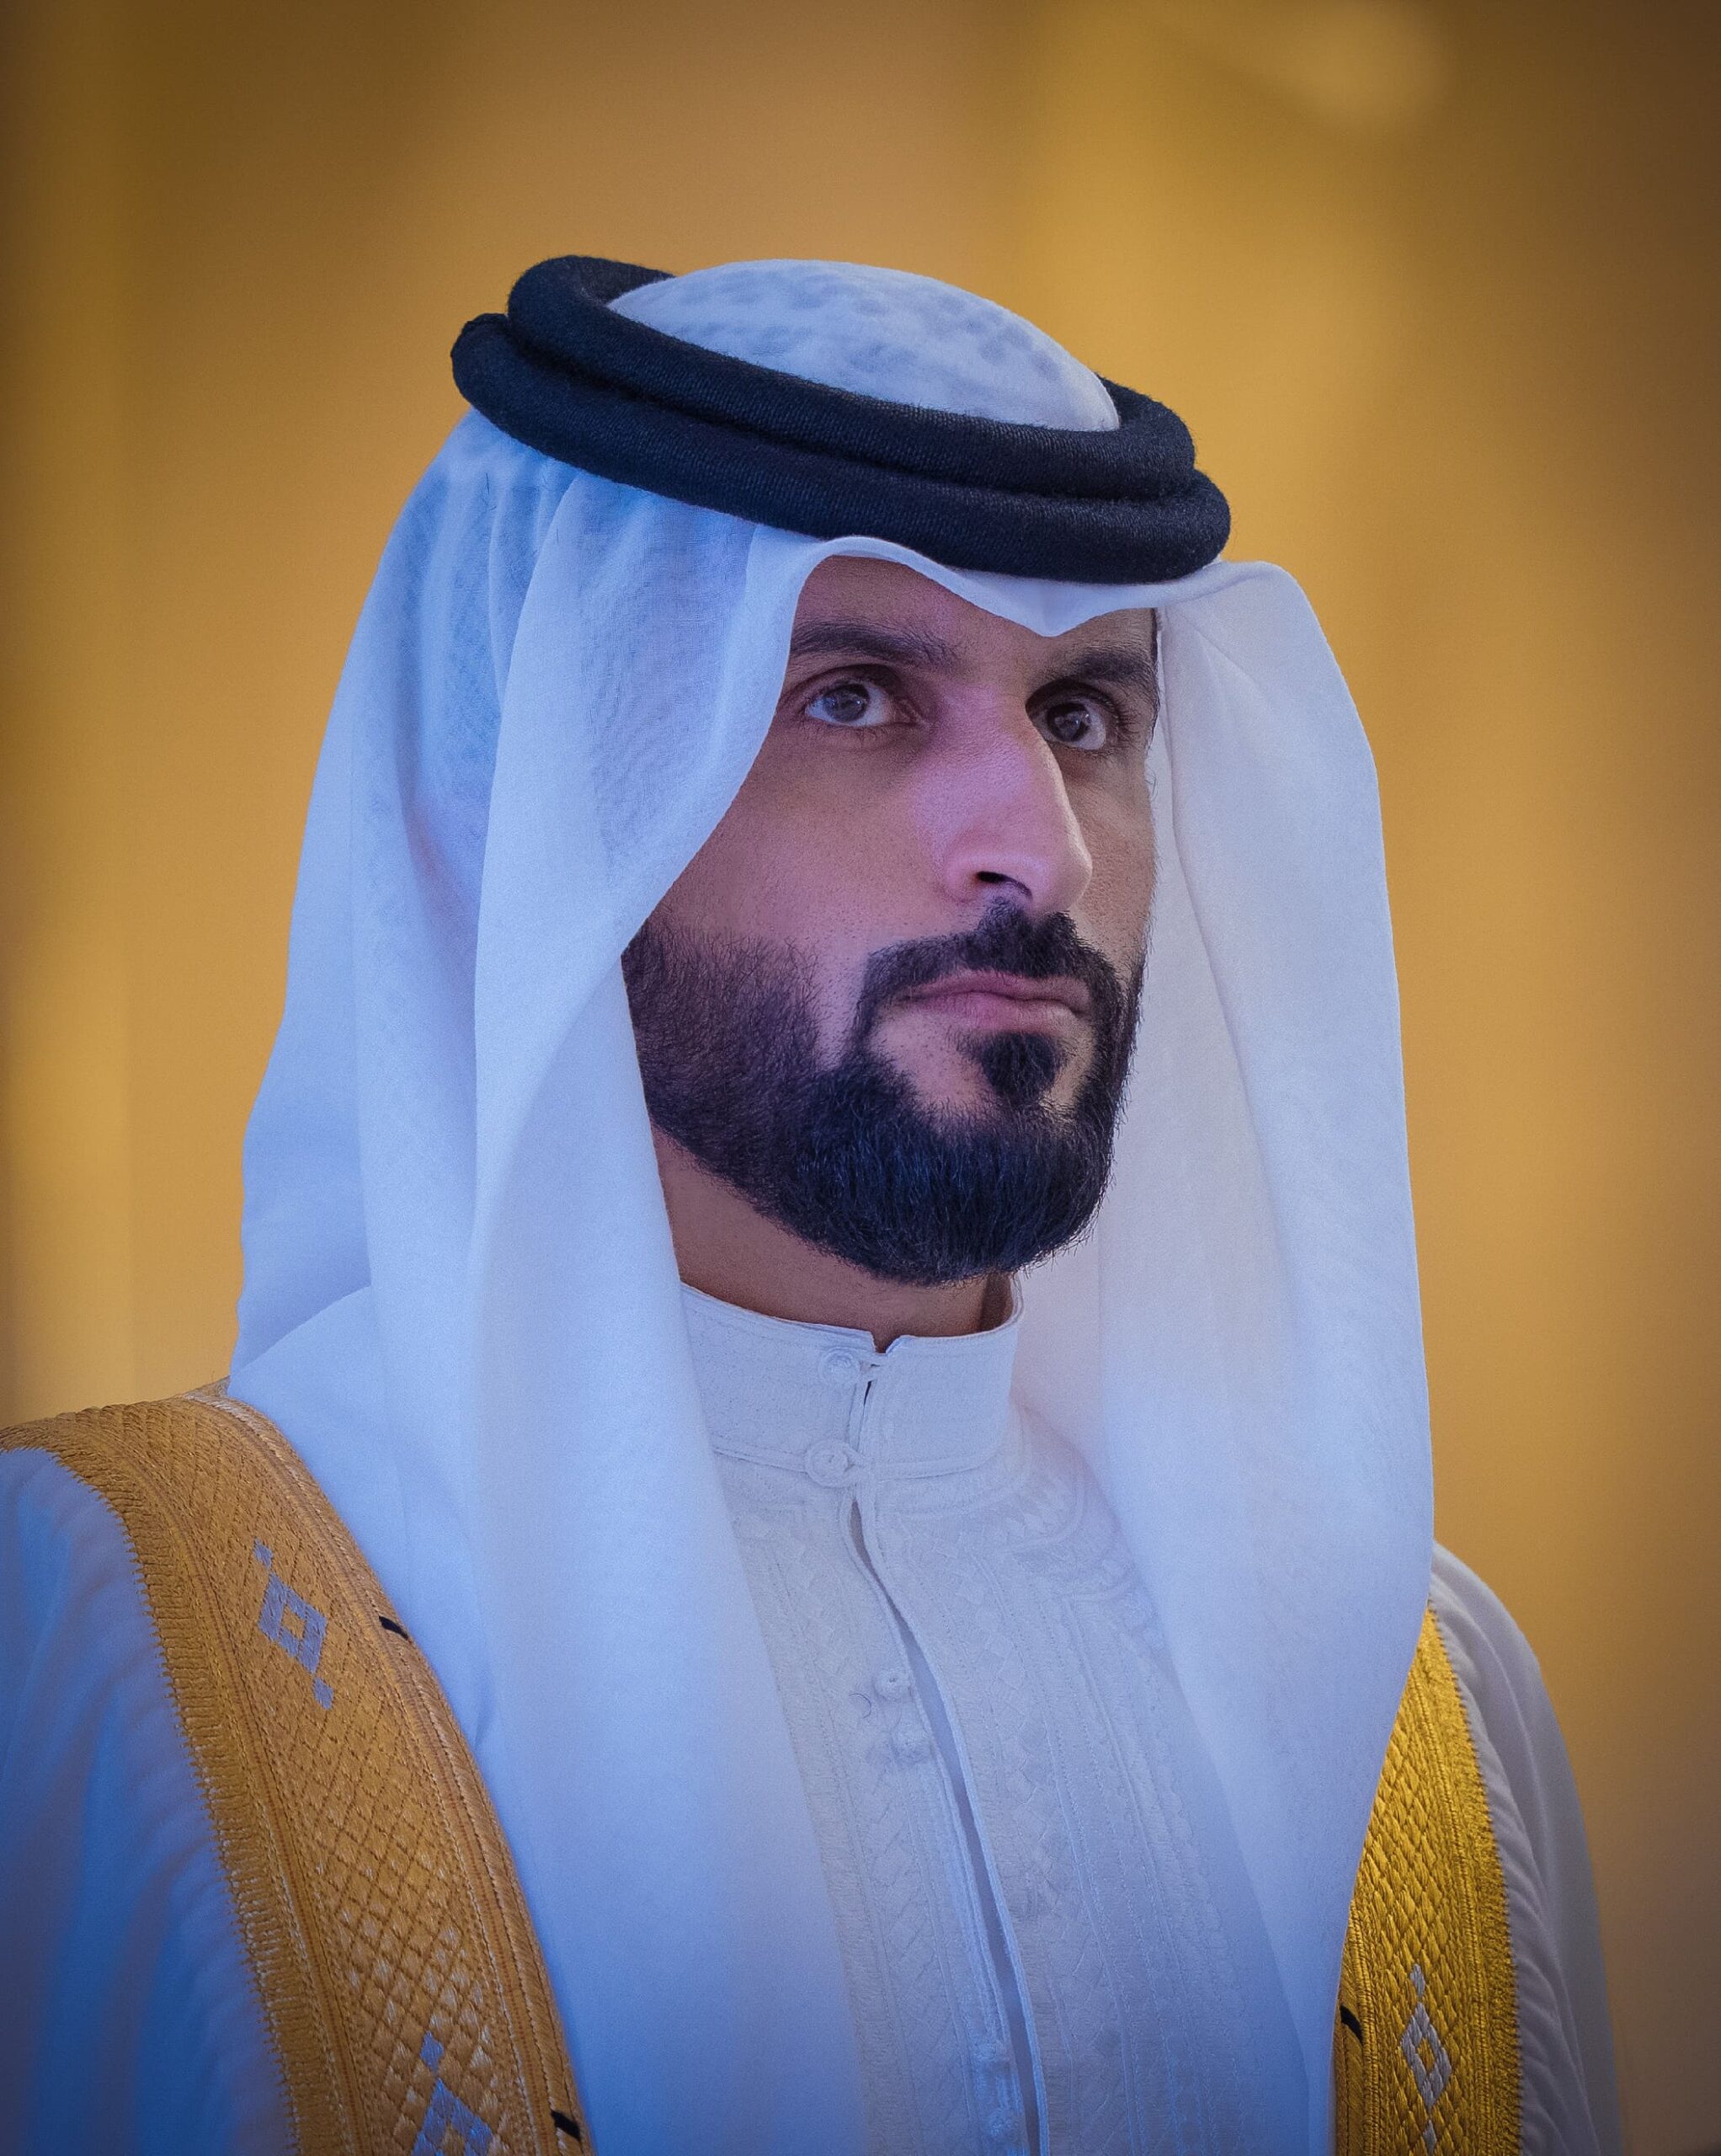 The Chairman of Nogaholding, Sheikh Nasser bin Hamad